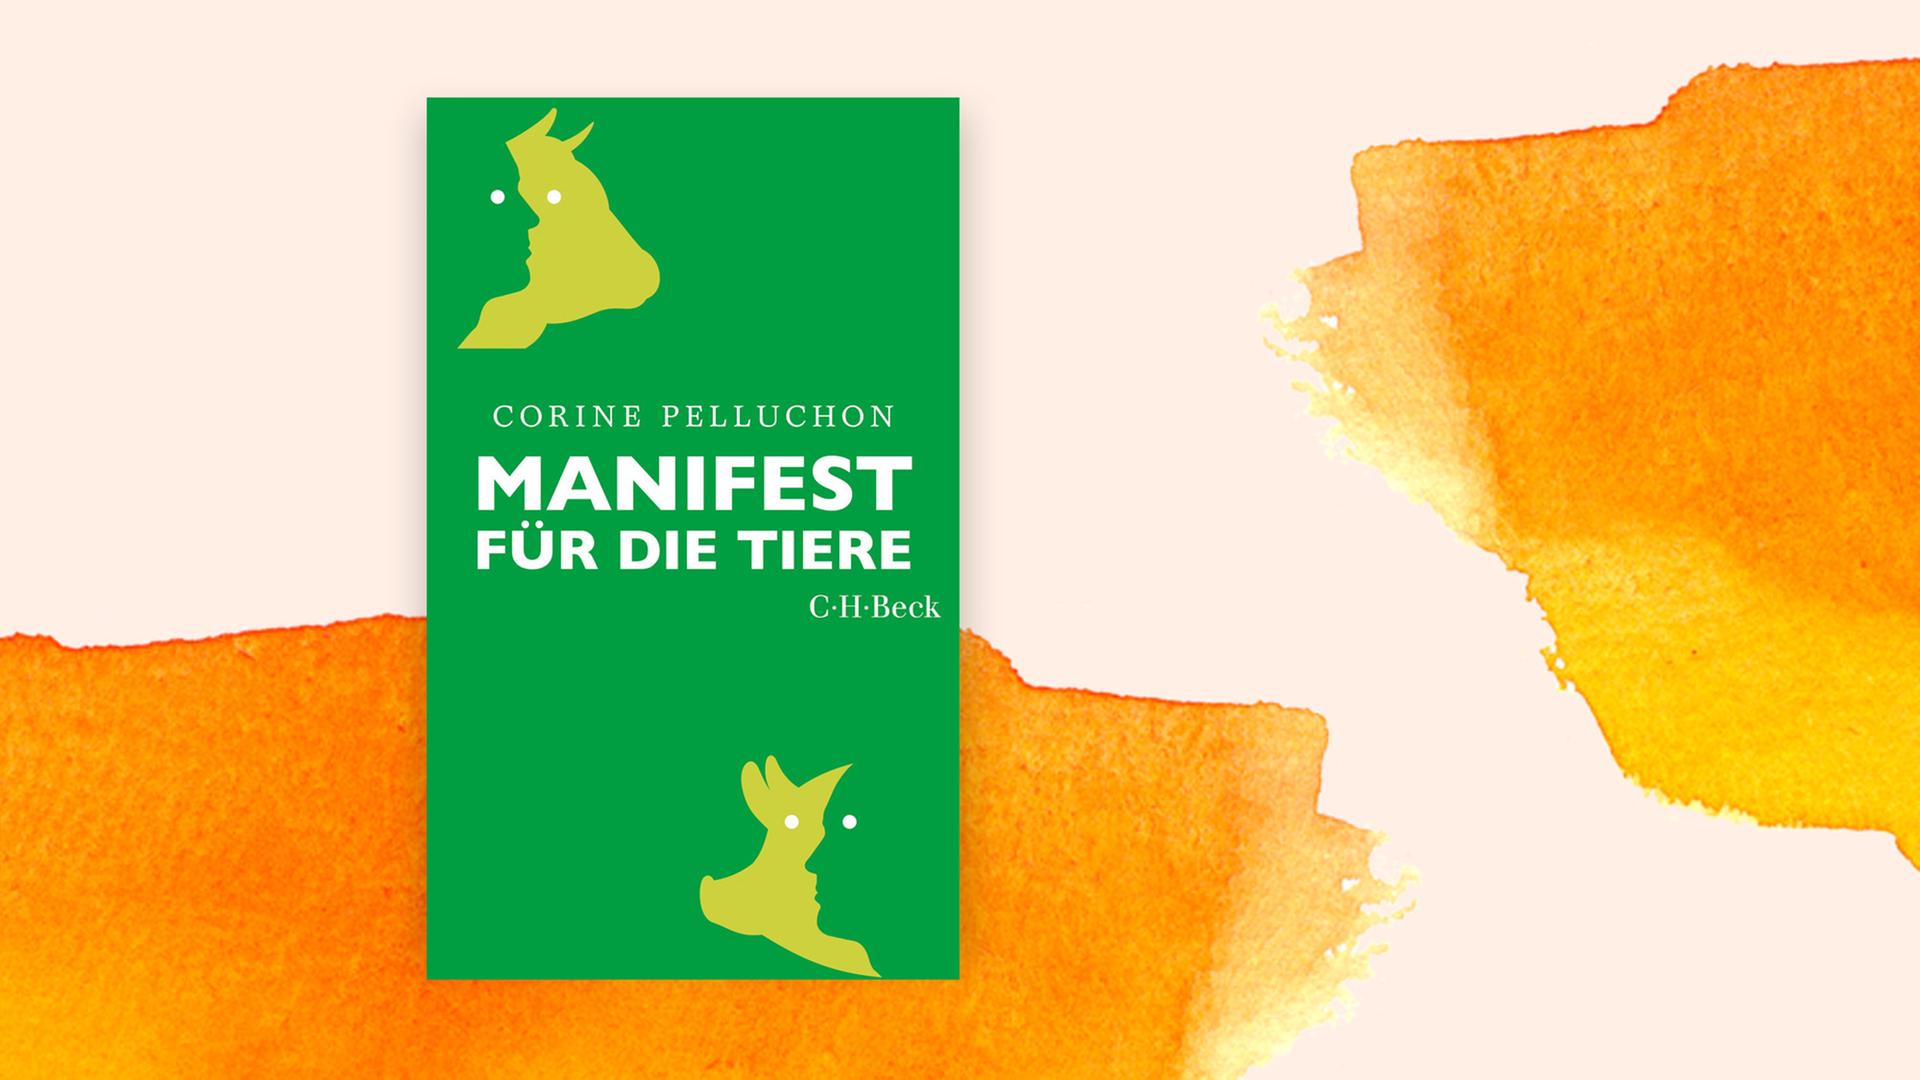 Auf einem grünen Cover sind Scherenschnitte eines Tiers und eines Menschen zu sehen, dazu der Titel "Manifest für die Tiere".